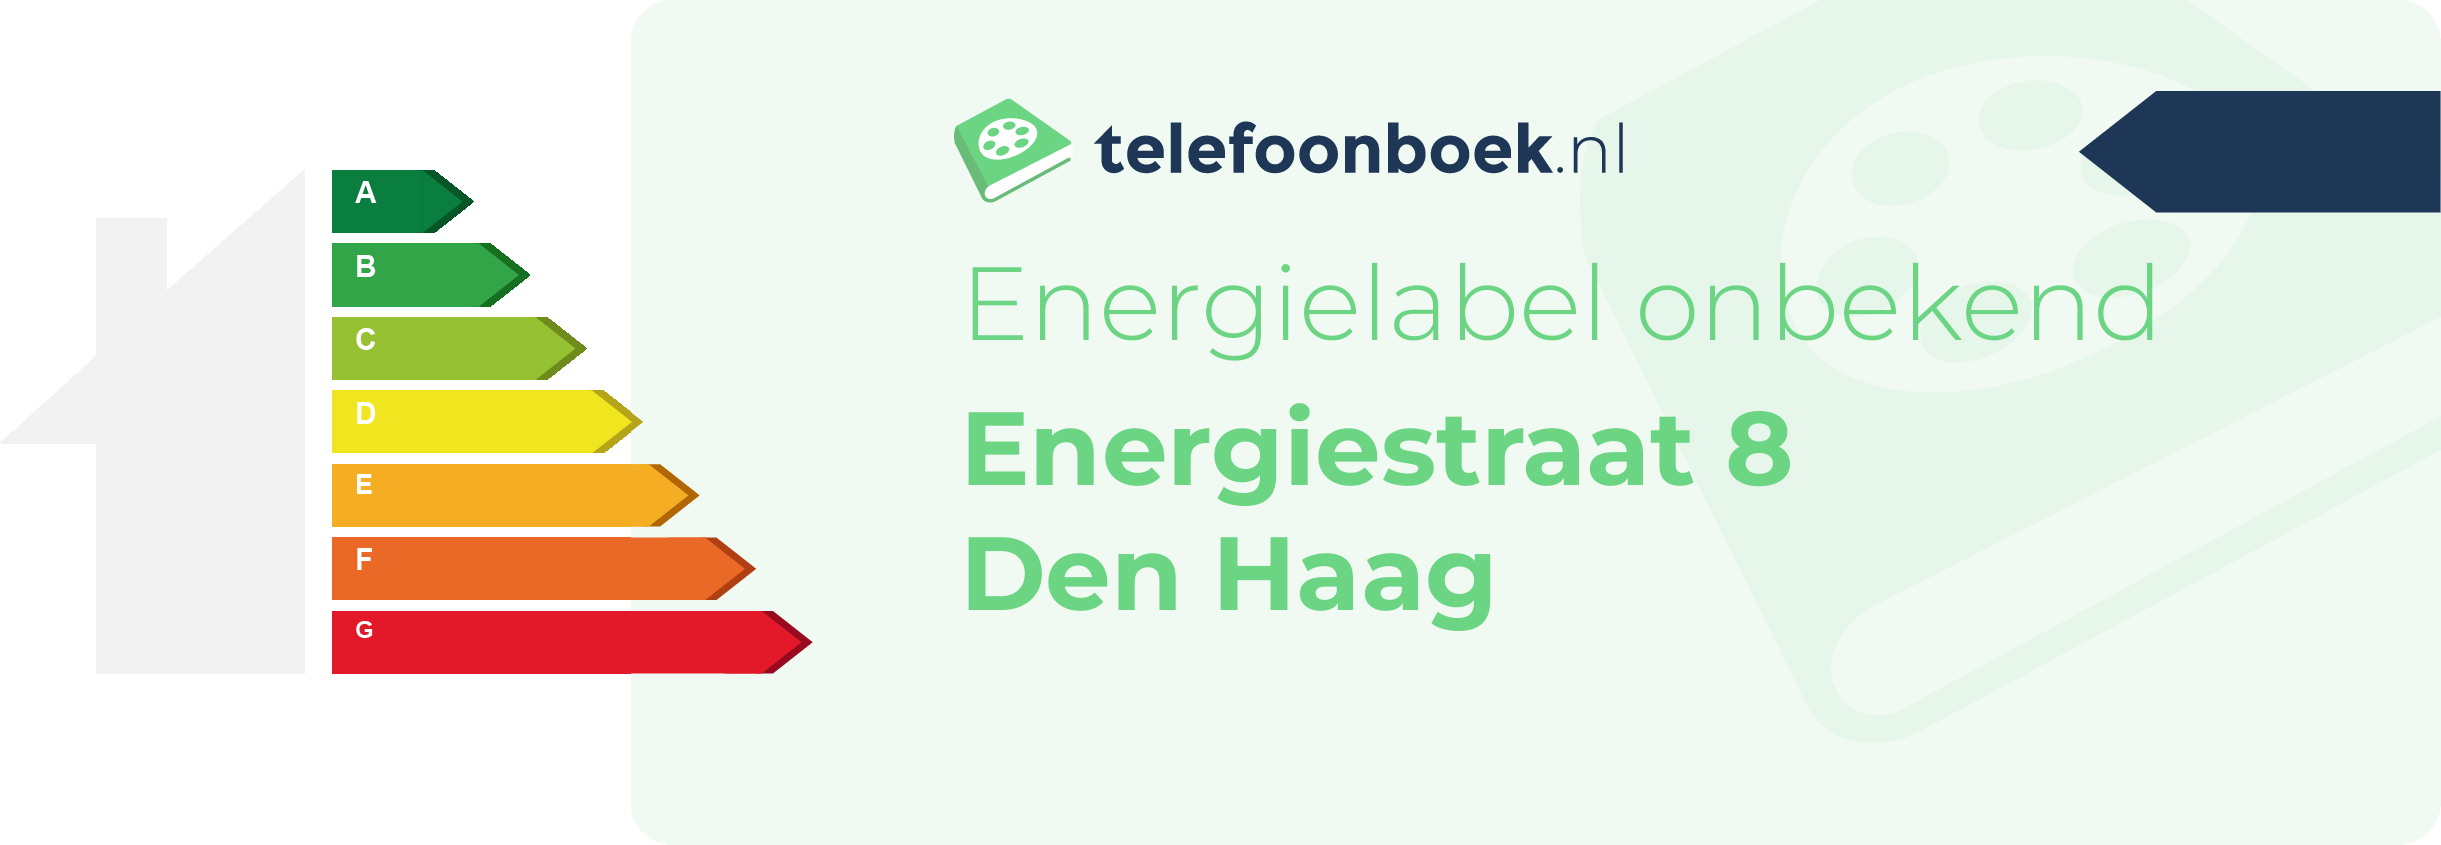 Energielabel Energiestraat 8 Den Haag